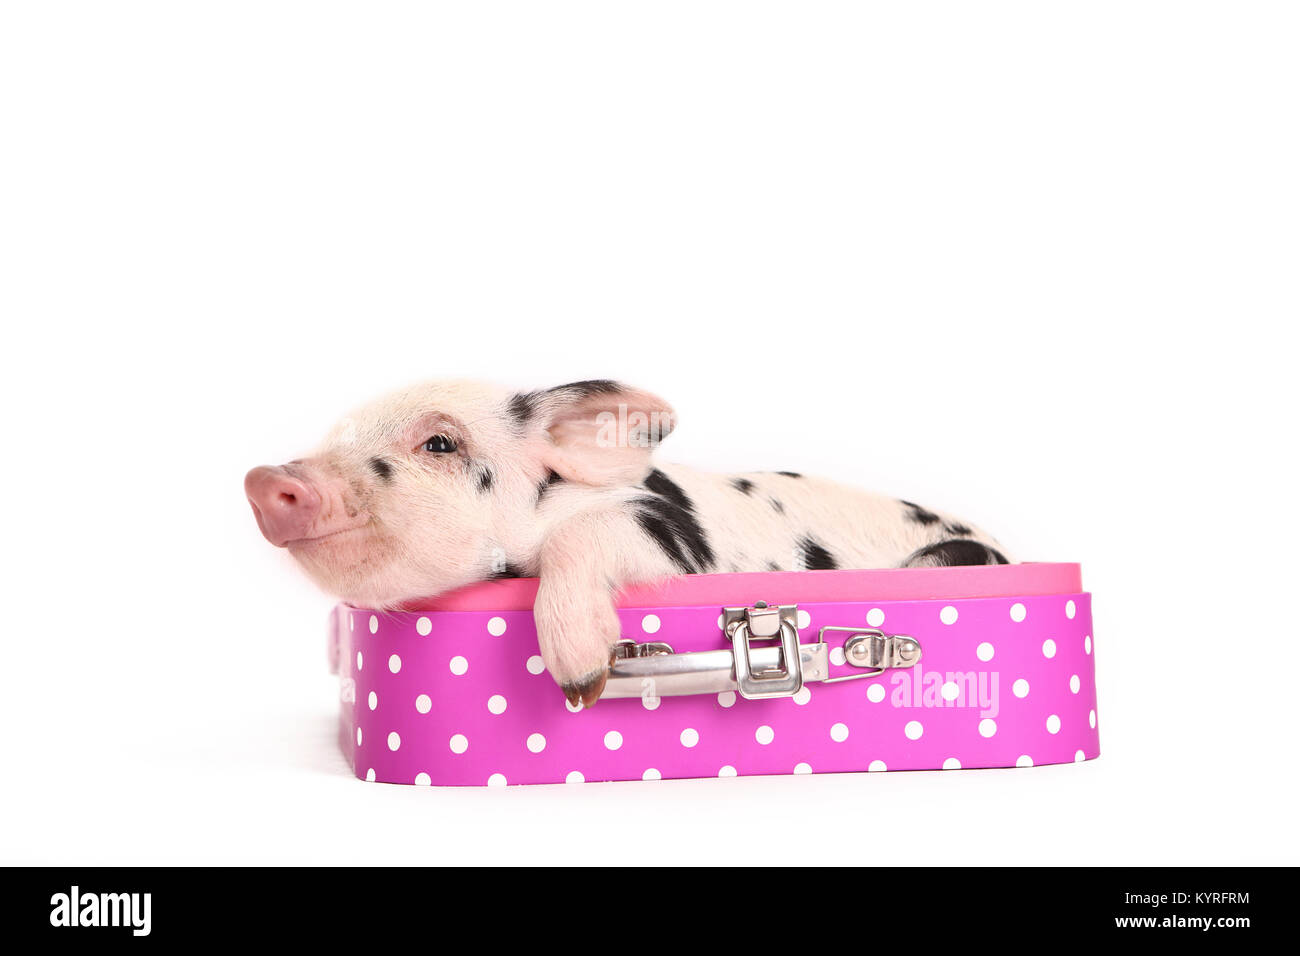 Porc domestique, Turopolje x ?. Porcinet (3 semaines) couché dans une valise rose à pois. Studio photo vu sur un fond blanc. Allemagne Banque D'Images